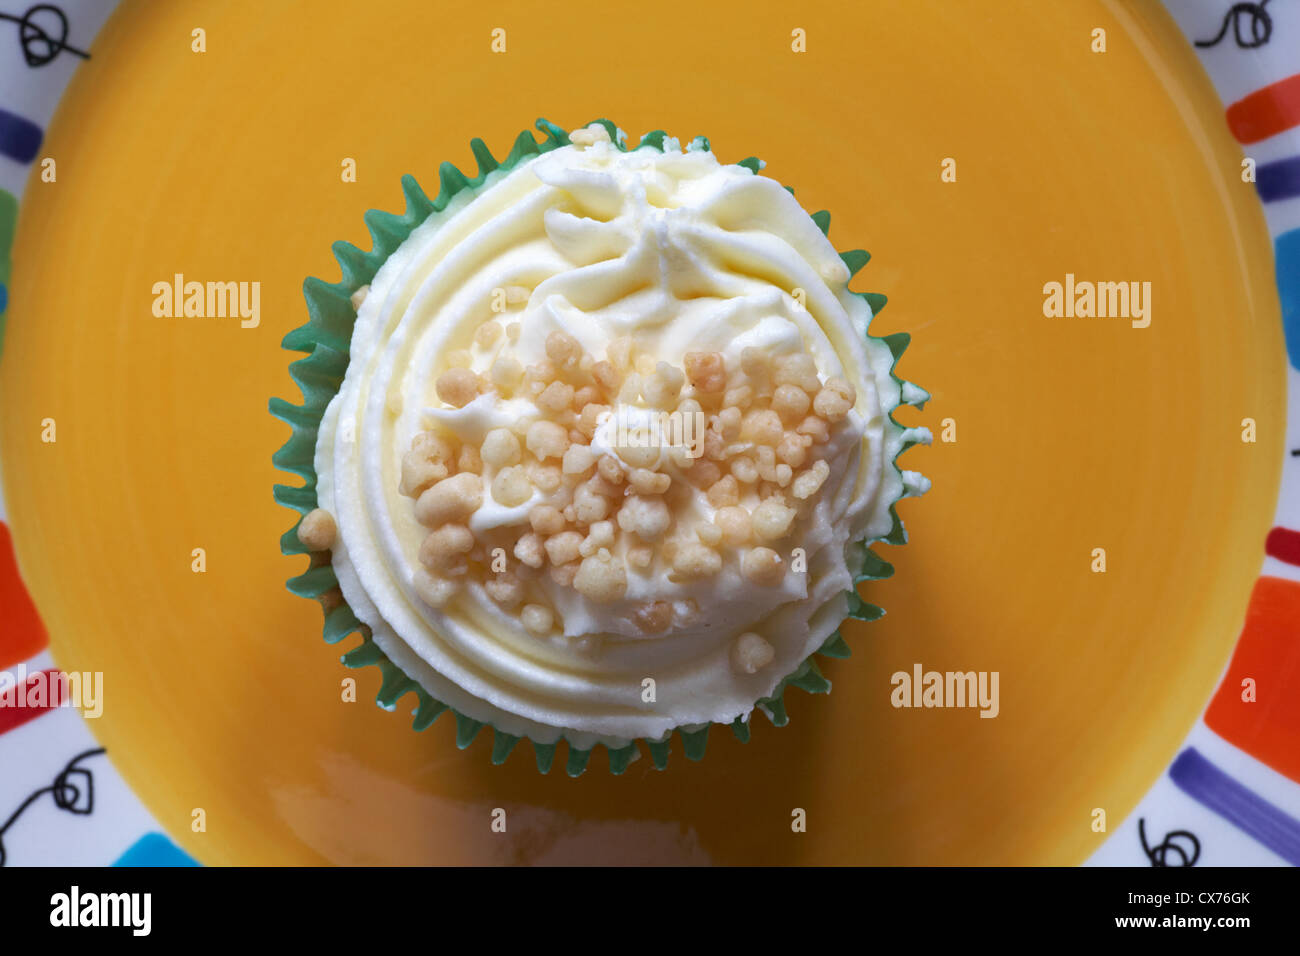 Guardando verso il basso su apple crumble cupcake sulla piastra di colore giallo - decorato a mano tortini di vaniglia riempito con piccante salsa di mele - dal di sopra Foto Stock